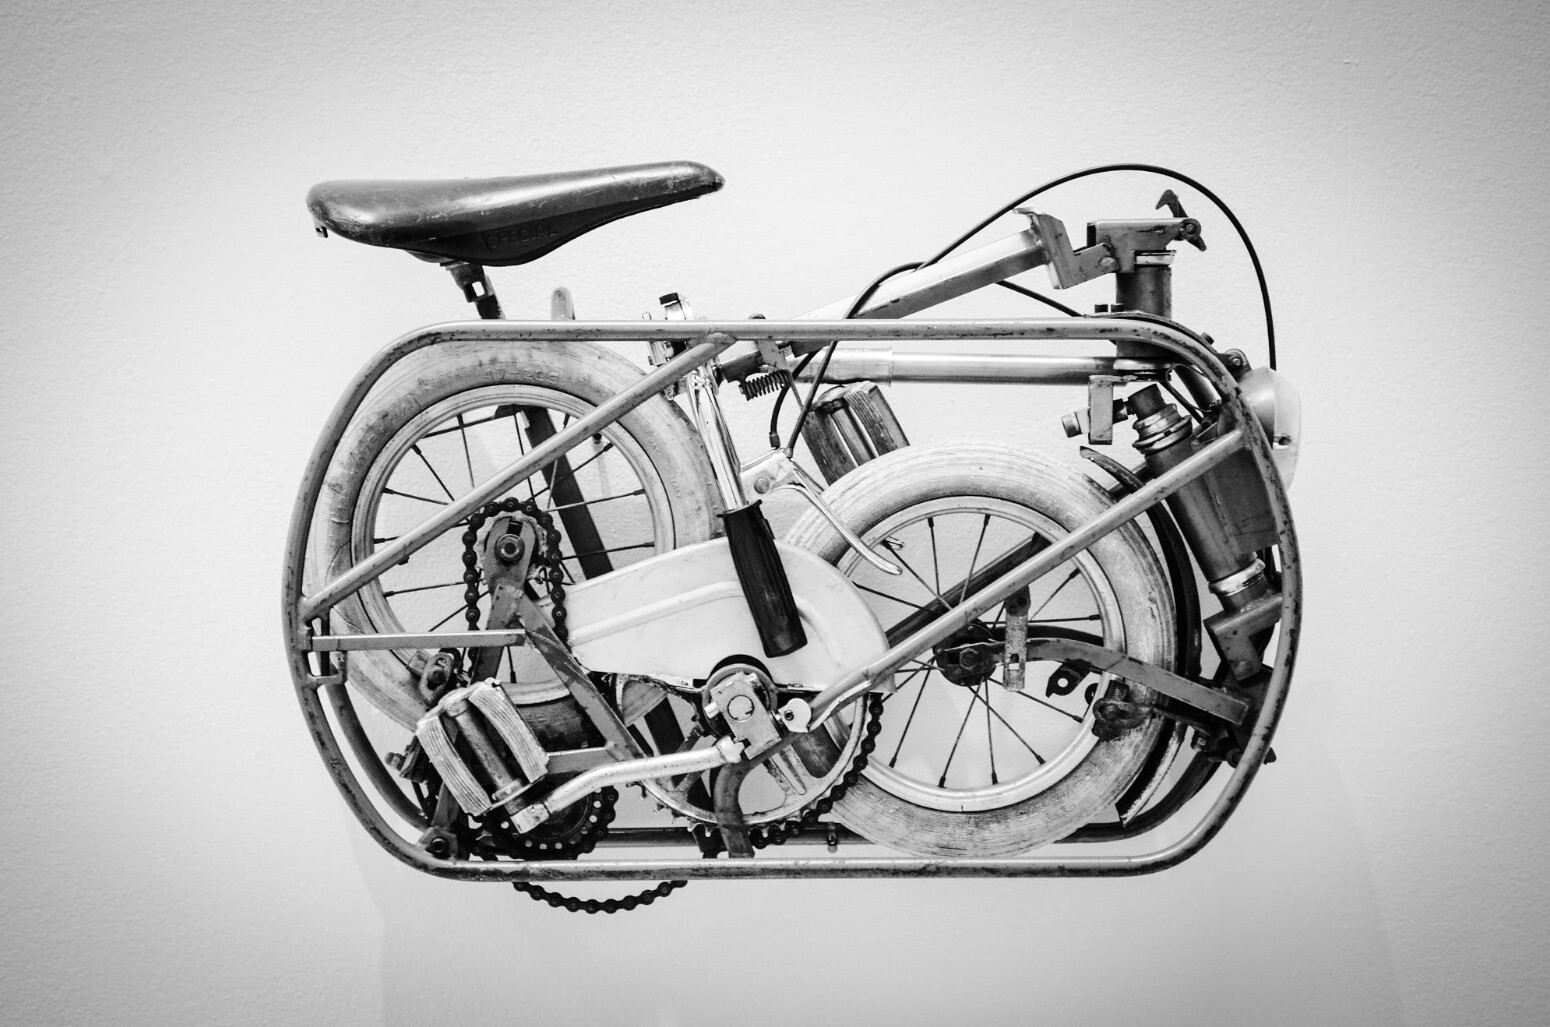 Складной велосипед купить, цены на складные велосипеды в интернет-магазине Байк Борд Шоп